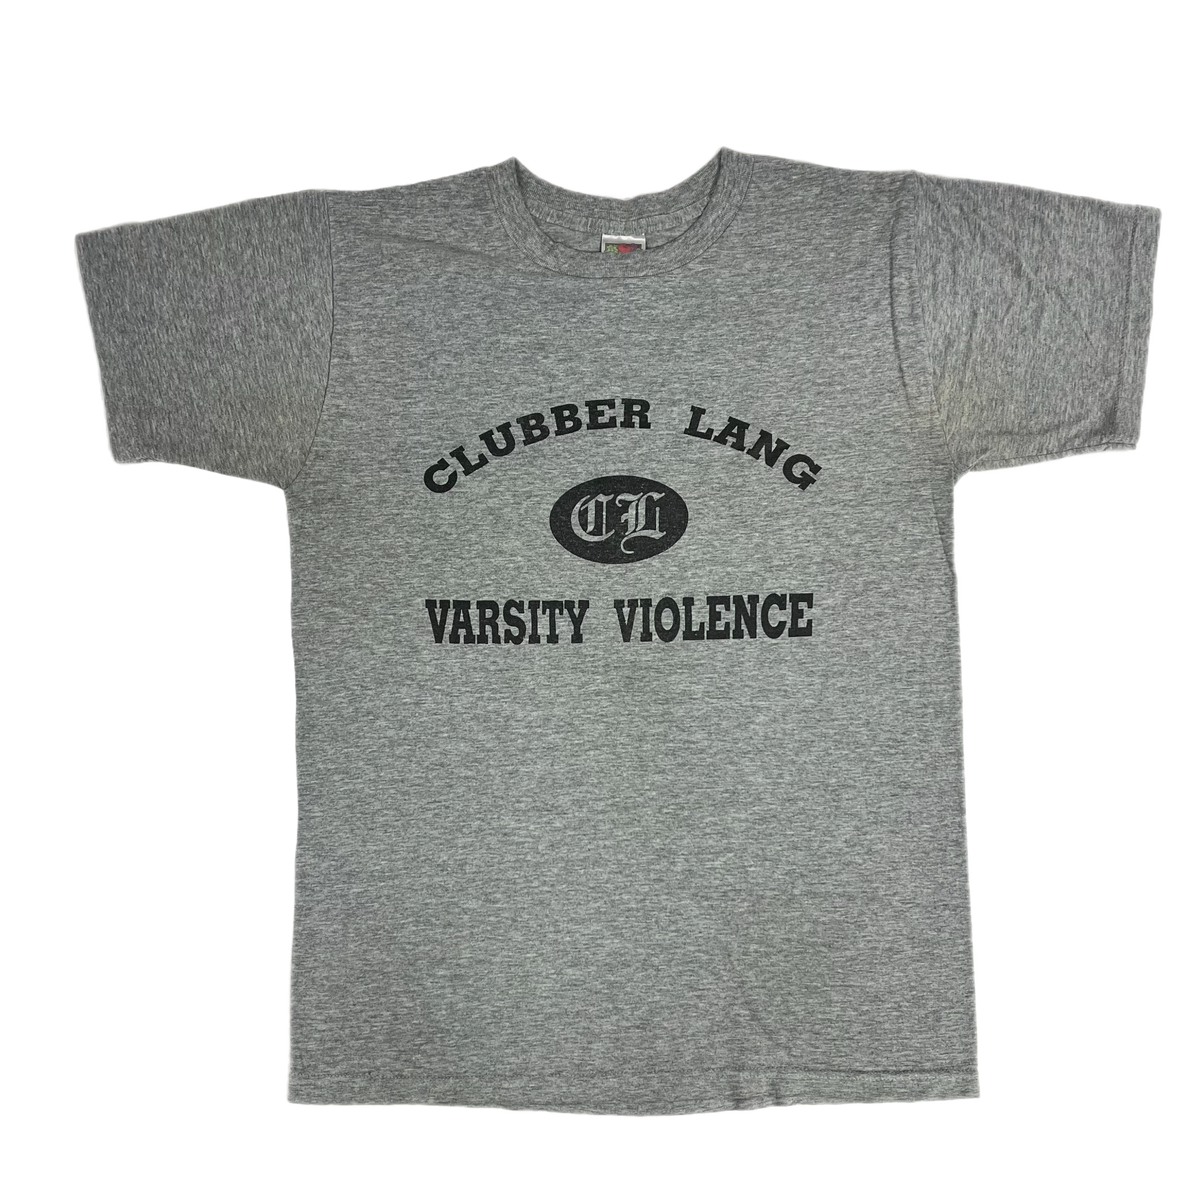 Vintage Clubber Lang &quot;Varsity Violence&quot; T-Shirt